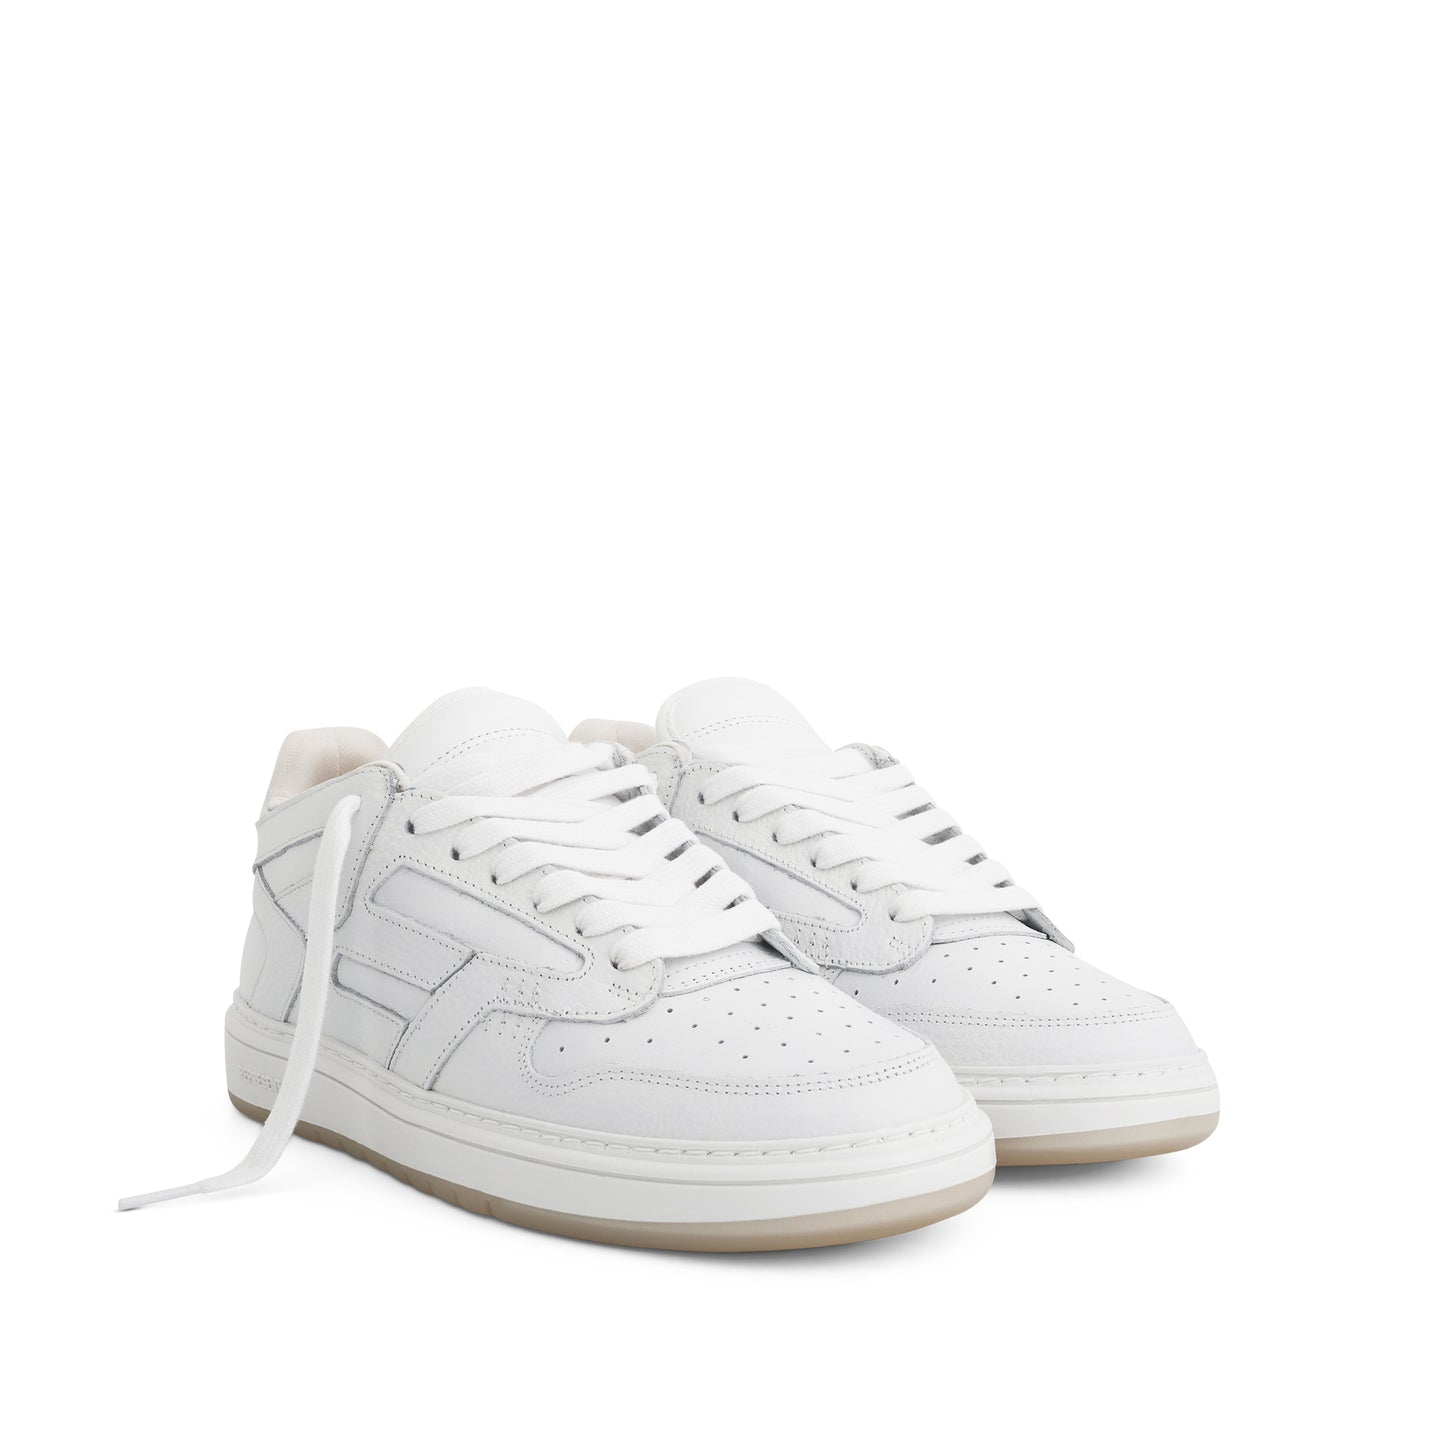 Reptor Low Sneaker in Flat White